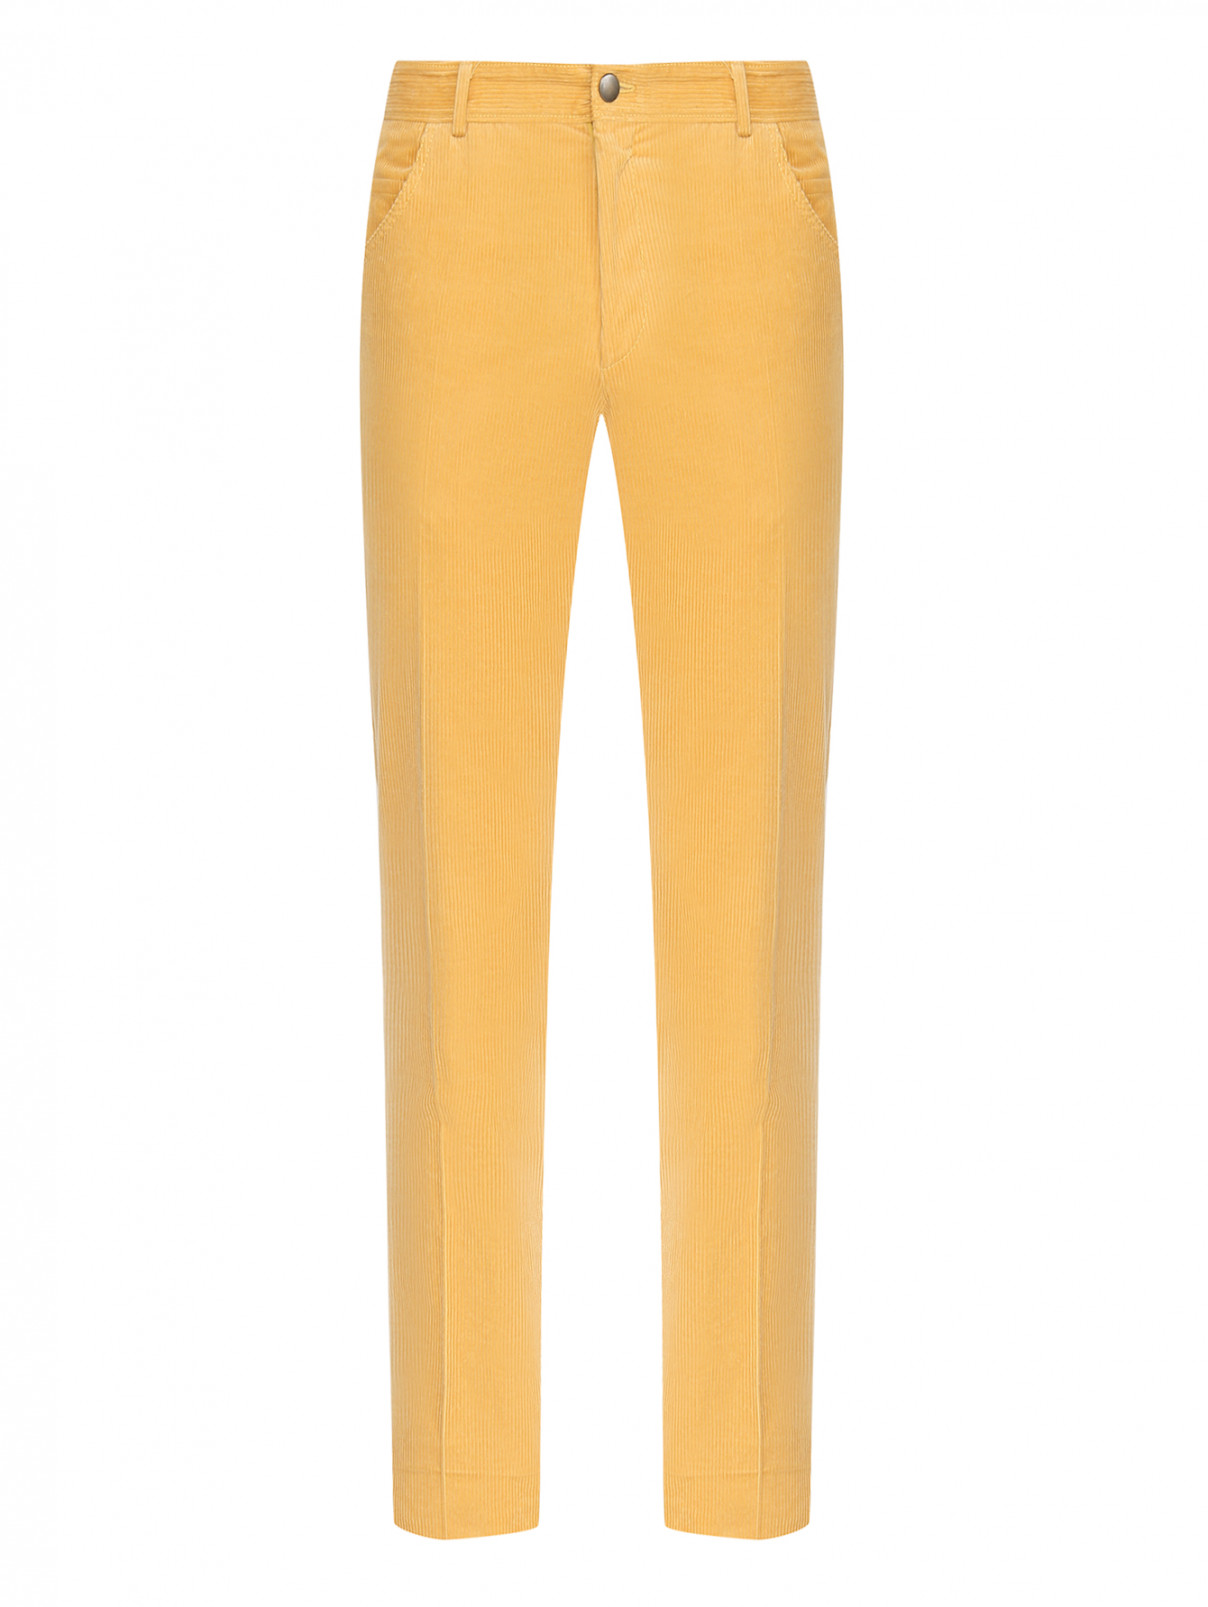 Вельветовые брюки из хлопка прямого кроя Belvest  –  Общий вид  – Цвет:  Желтый